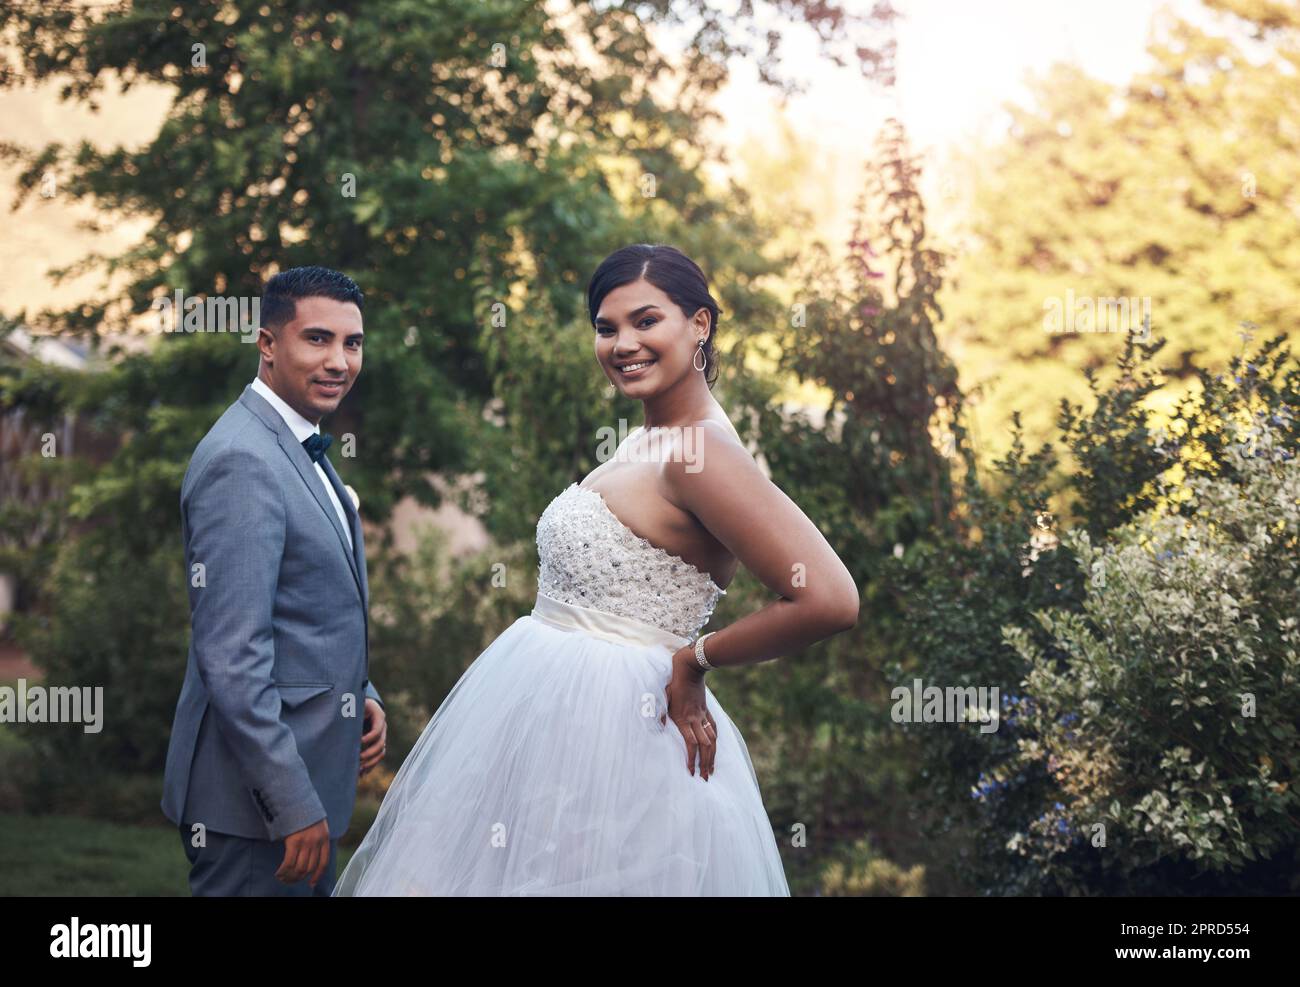 Schauen Sie atemberaubend an ihrem besonderen Tag. Ein junges Paar posiert draußen an ihrem Hochzeitstag. Stockfoto